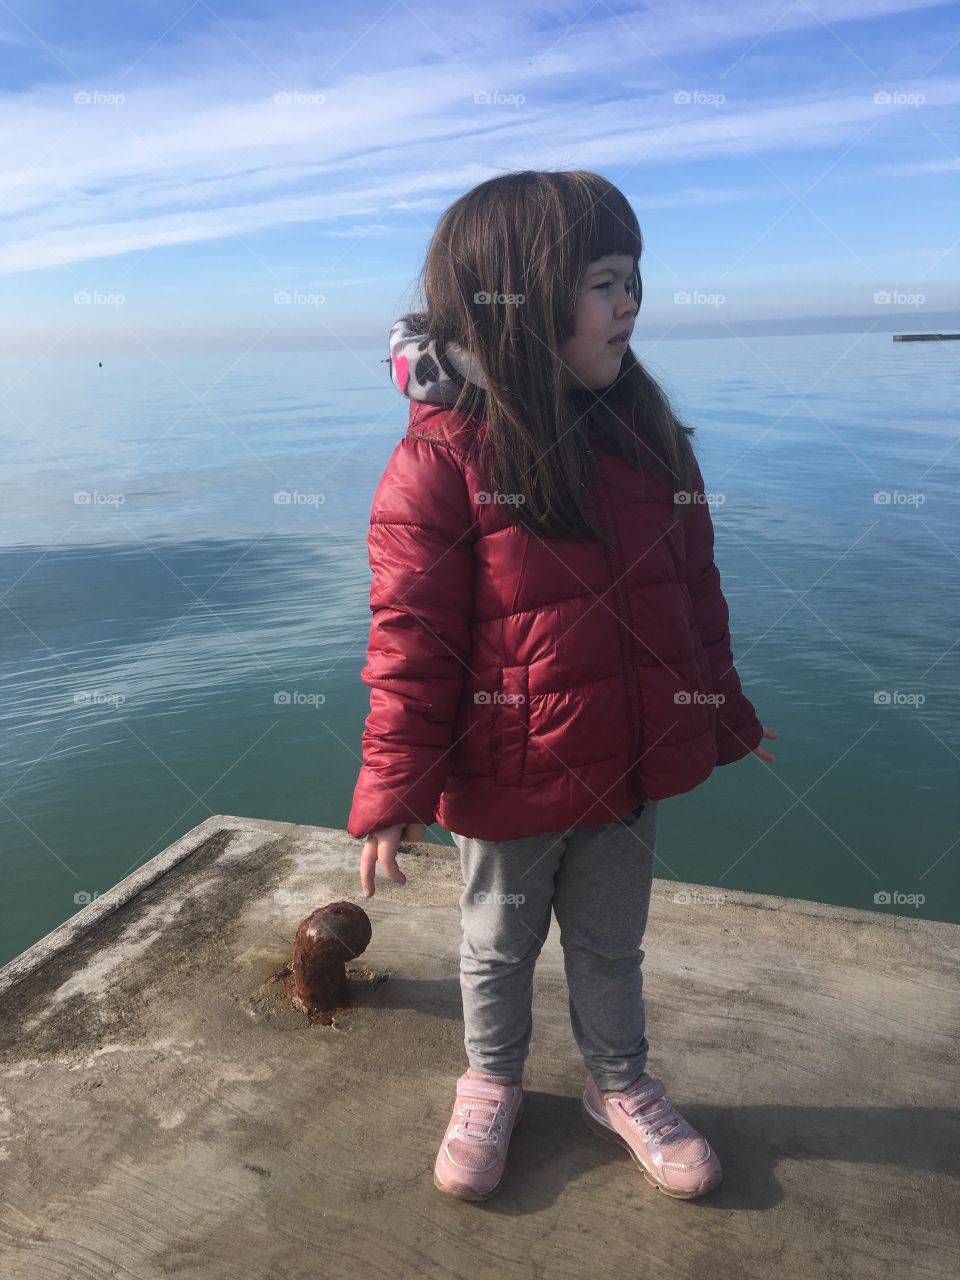 Girl sea winter beautie 5 year old Grado Italy seashore seaside pier deck 